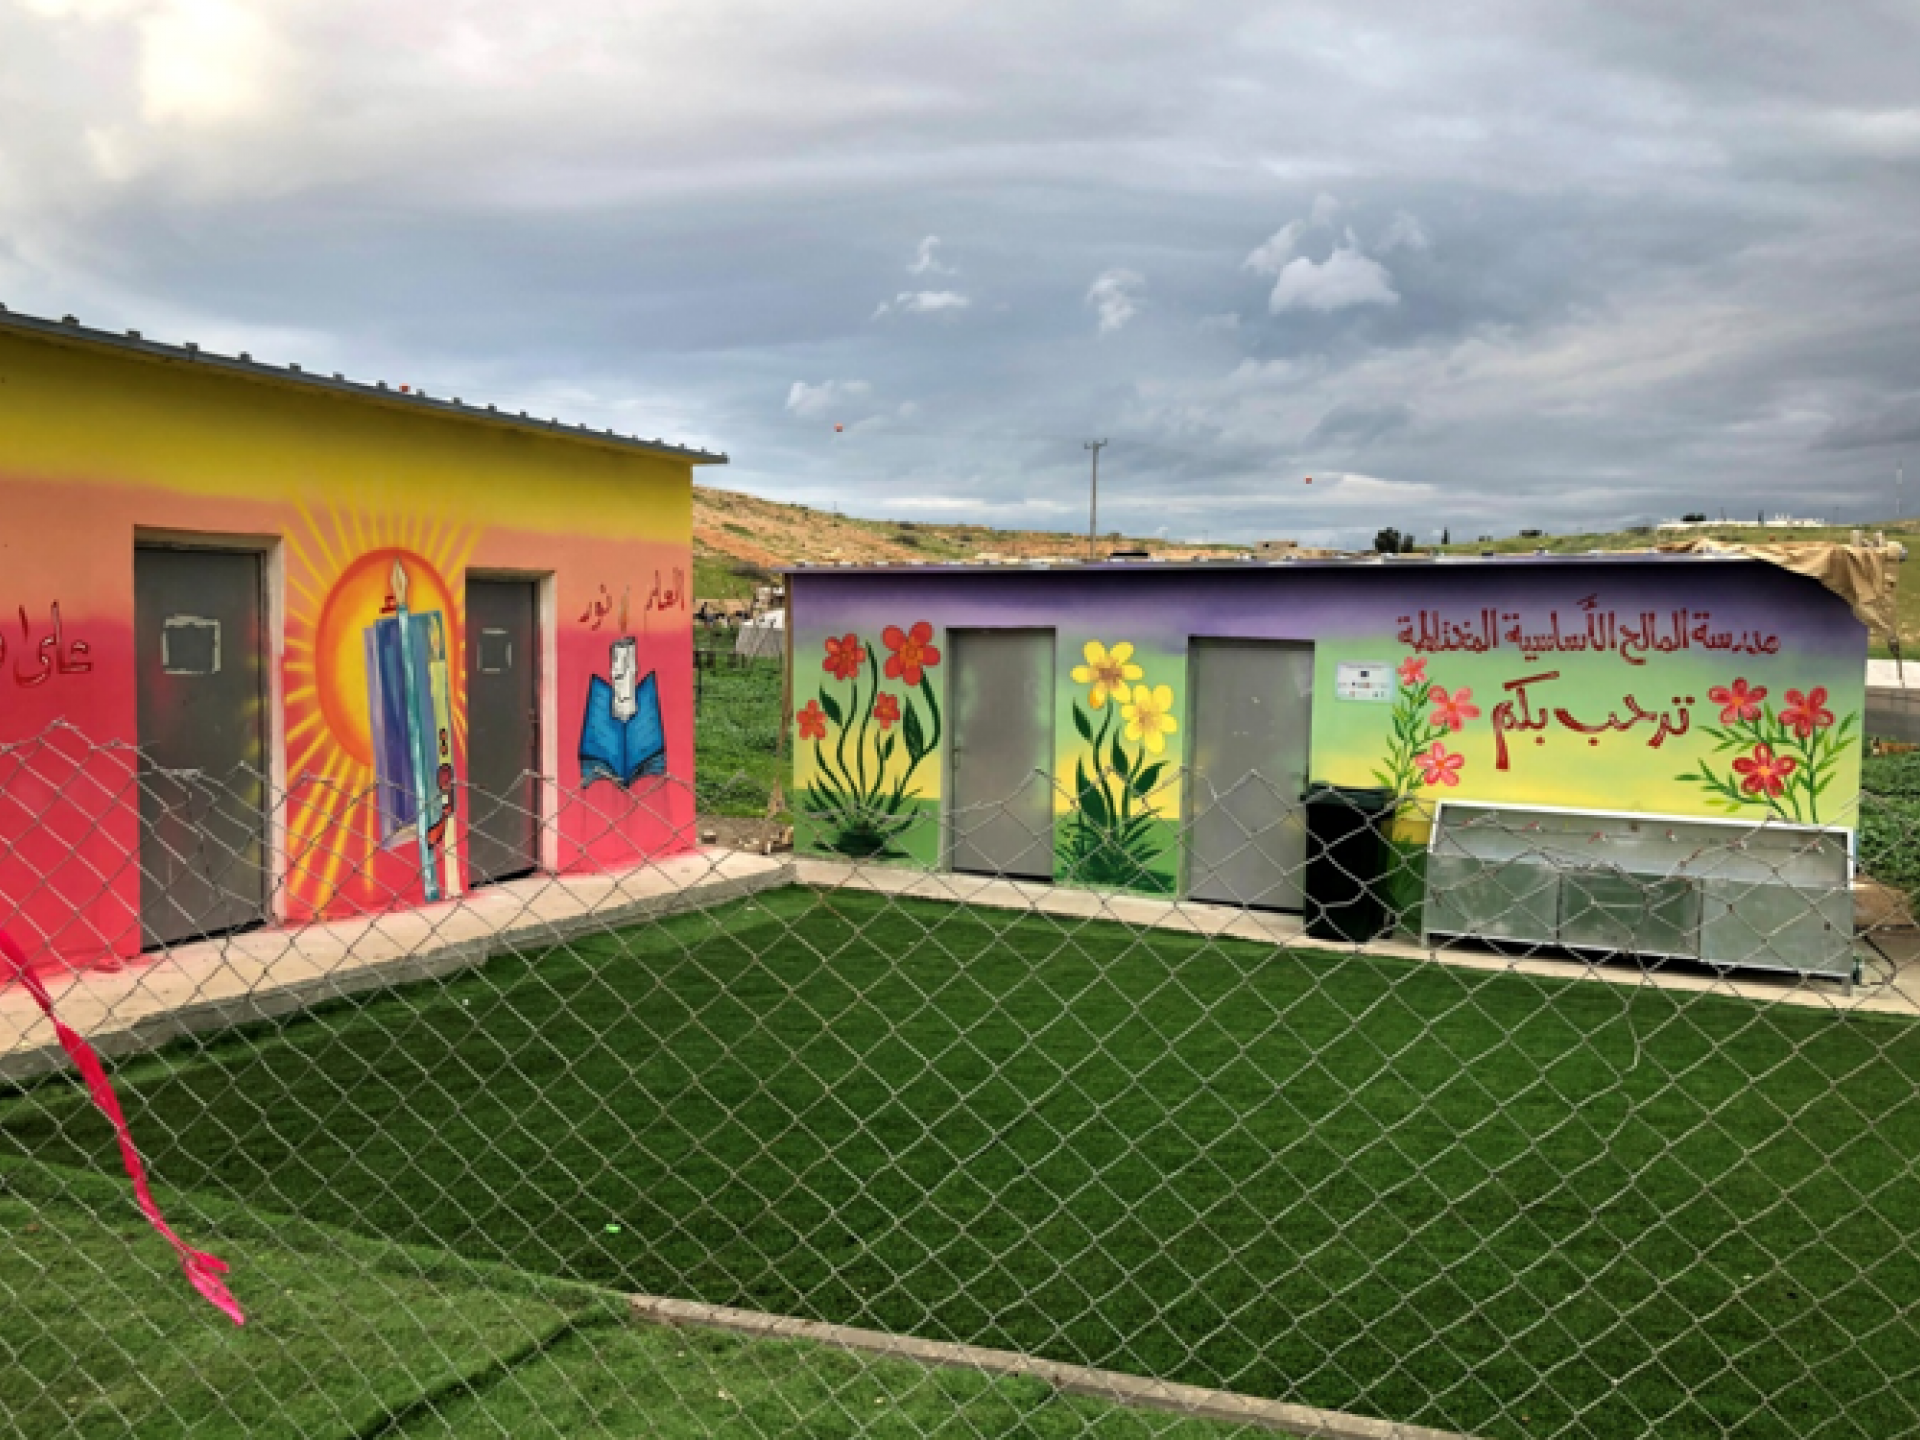 שני מבנים קטנים של בית ספר, דשא מפלסטיק ירוק מאוד וציורי קיר יפים